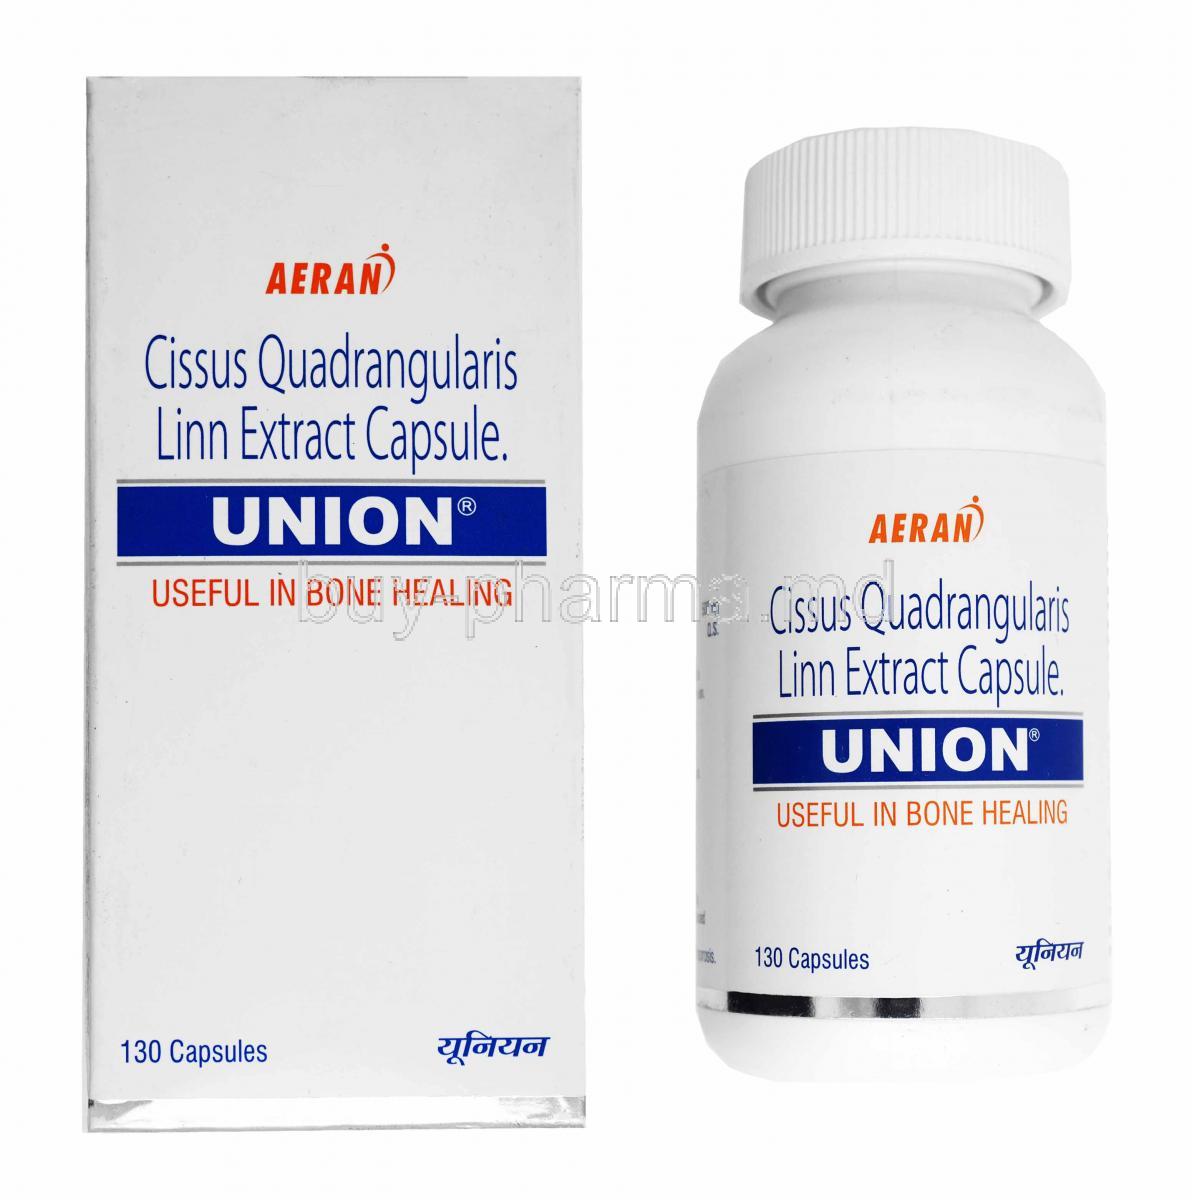 Union, Cissus Quandrangularis box and capsule bottle